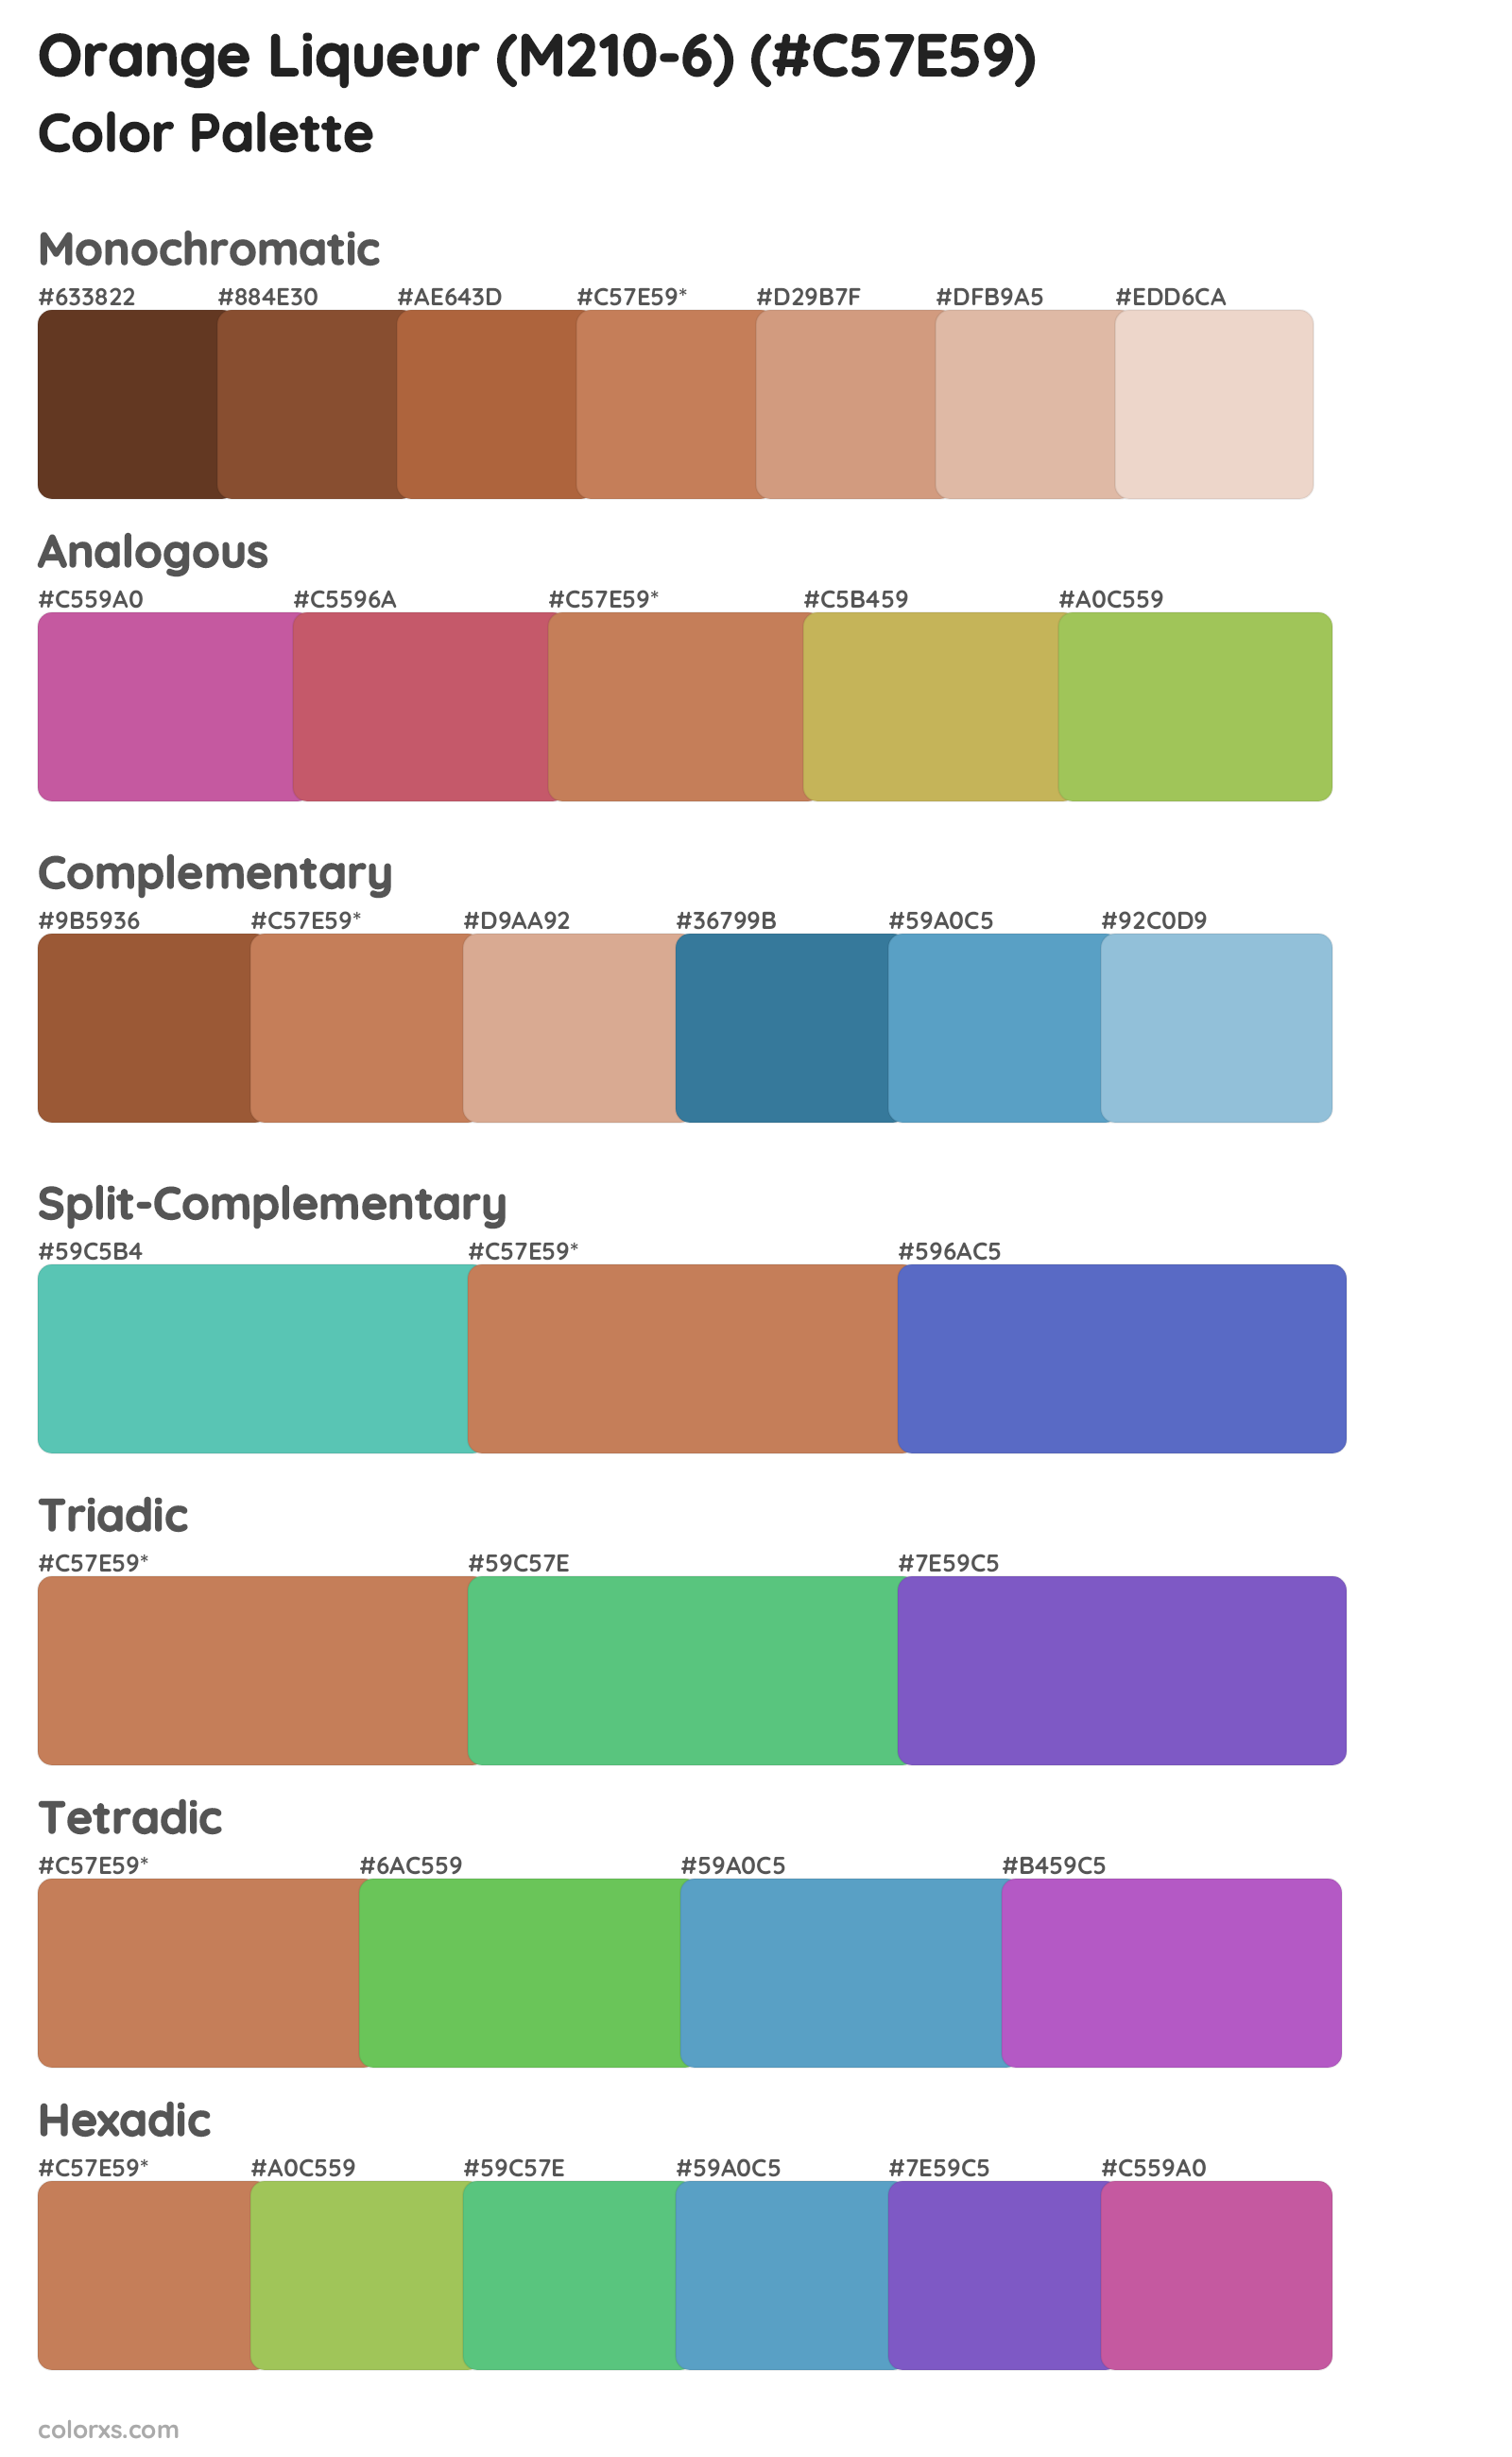 Orange Liqueur (M210-6) Color Scheme Palettes